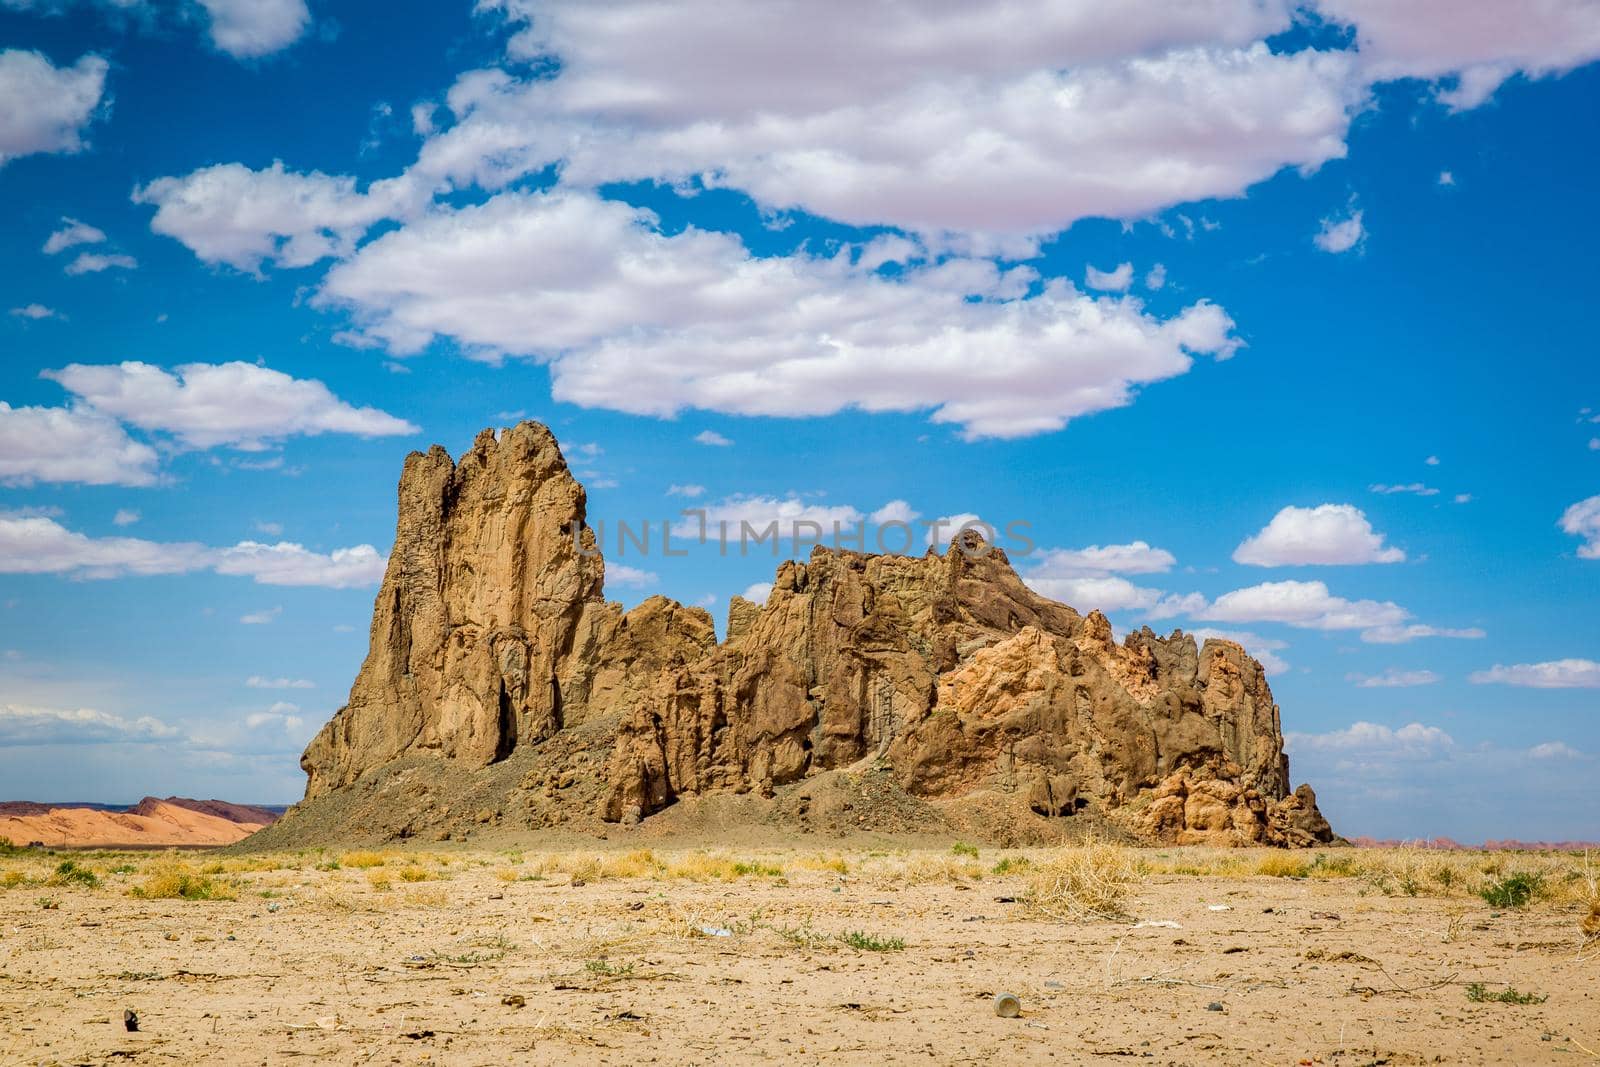 Church Rock in AZ by gepeng